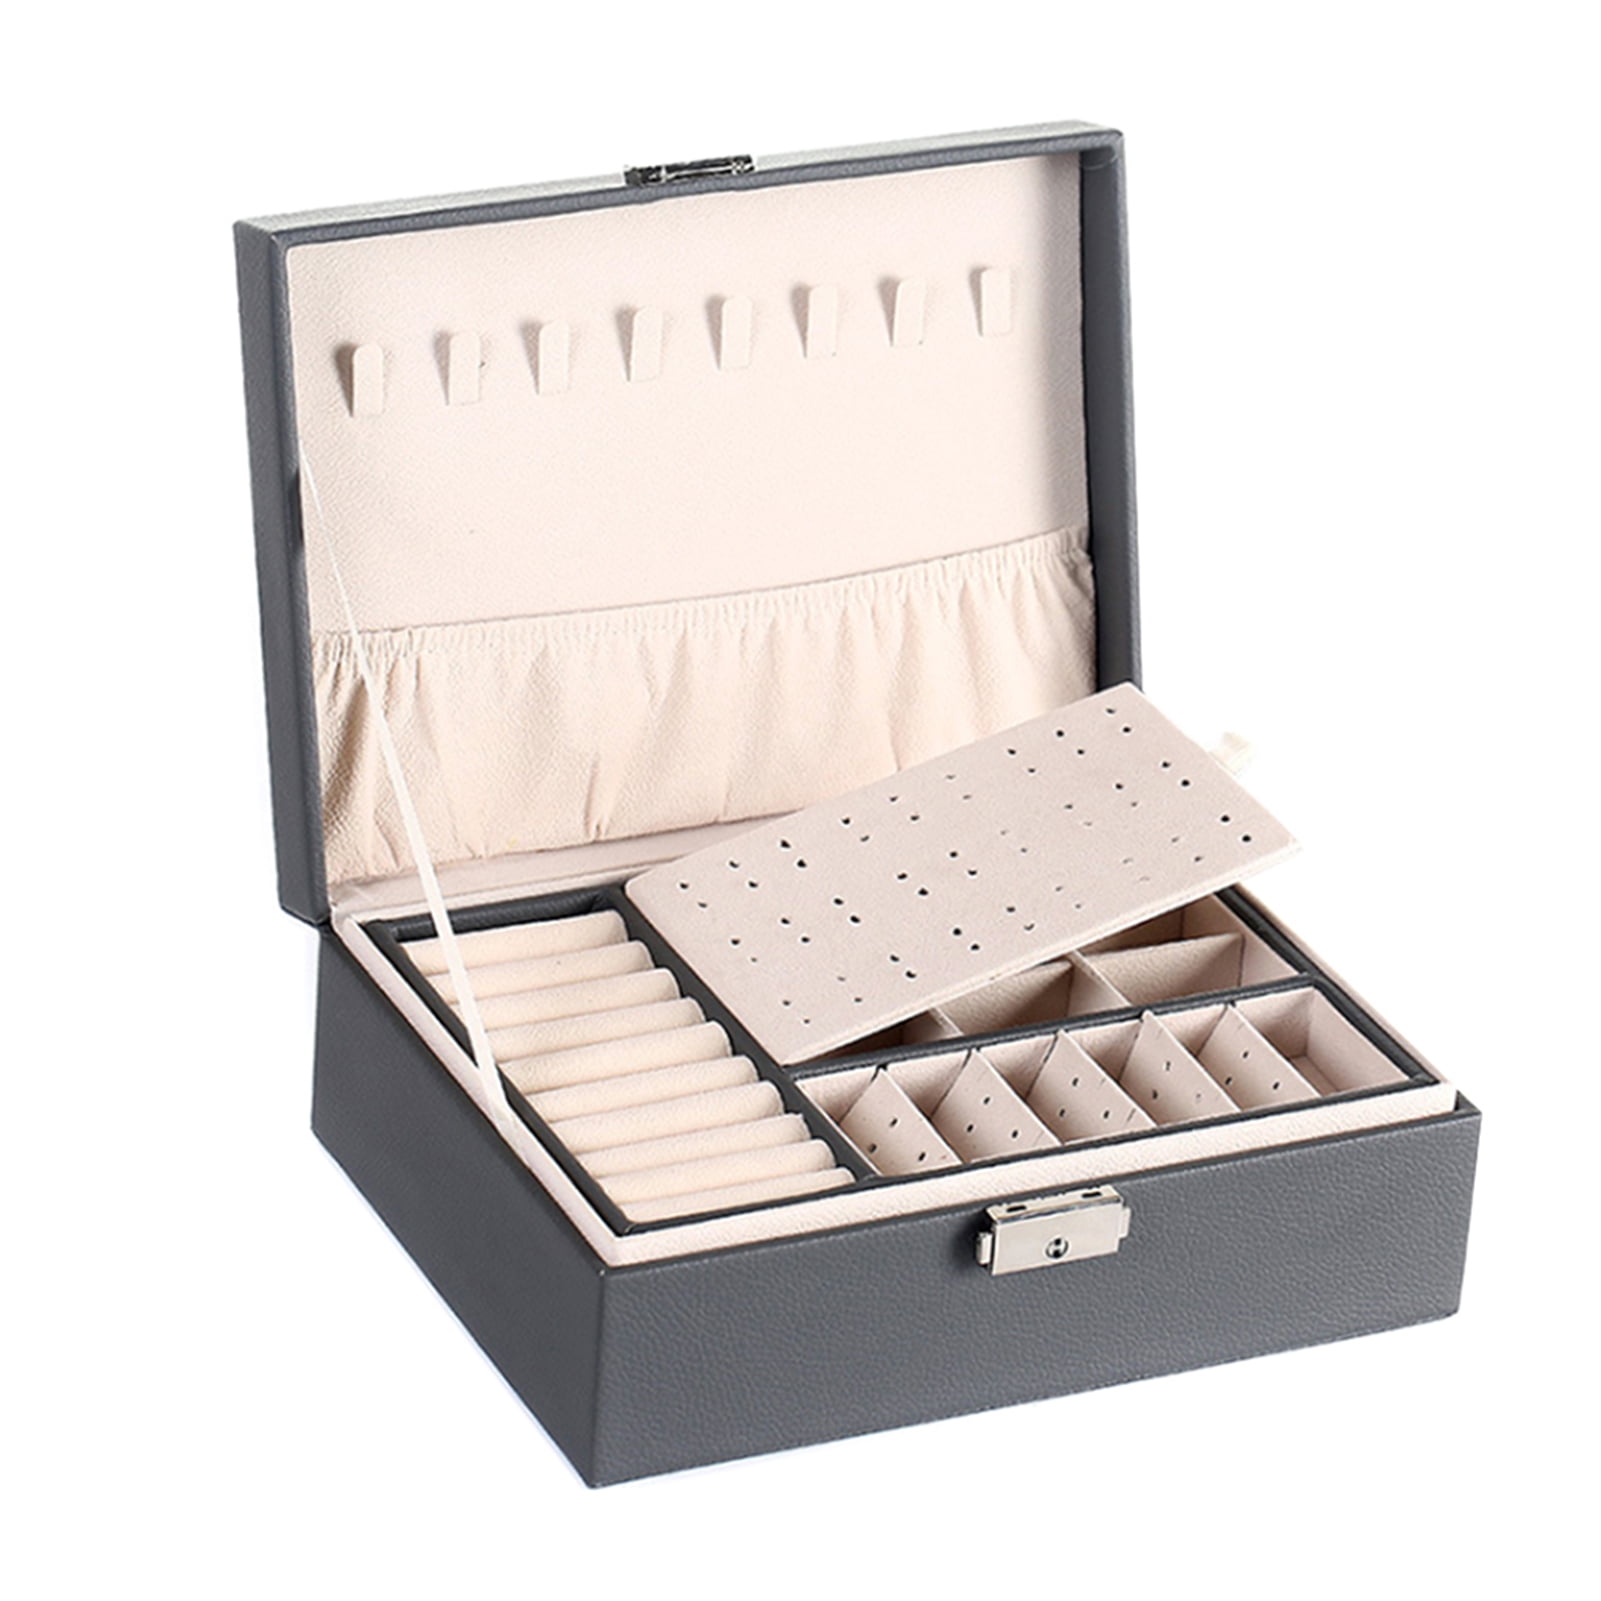 Suzicca Multi-Functional Jewelry Box PU Leather Casket Double